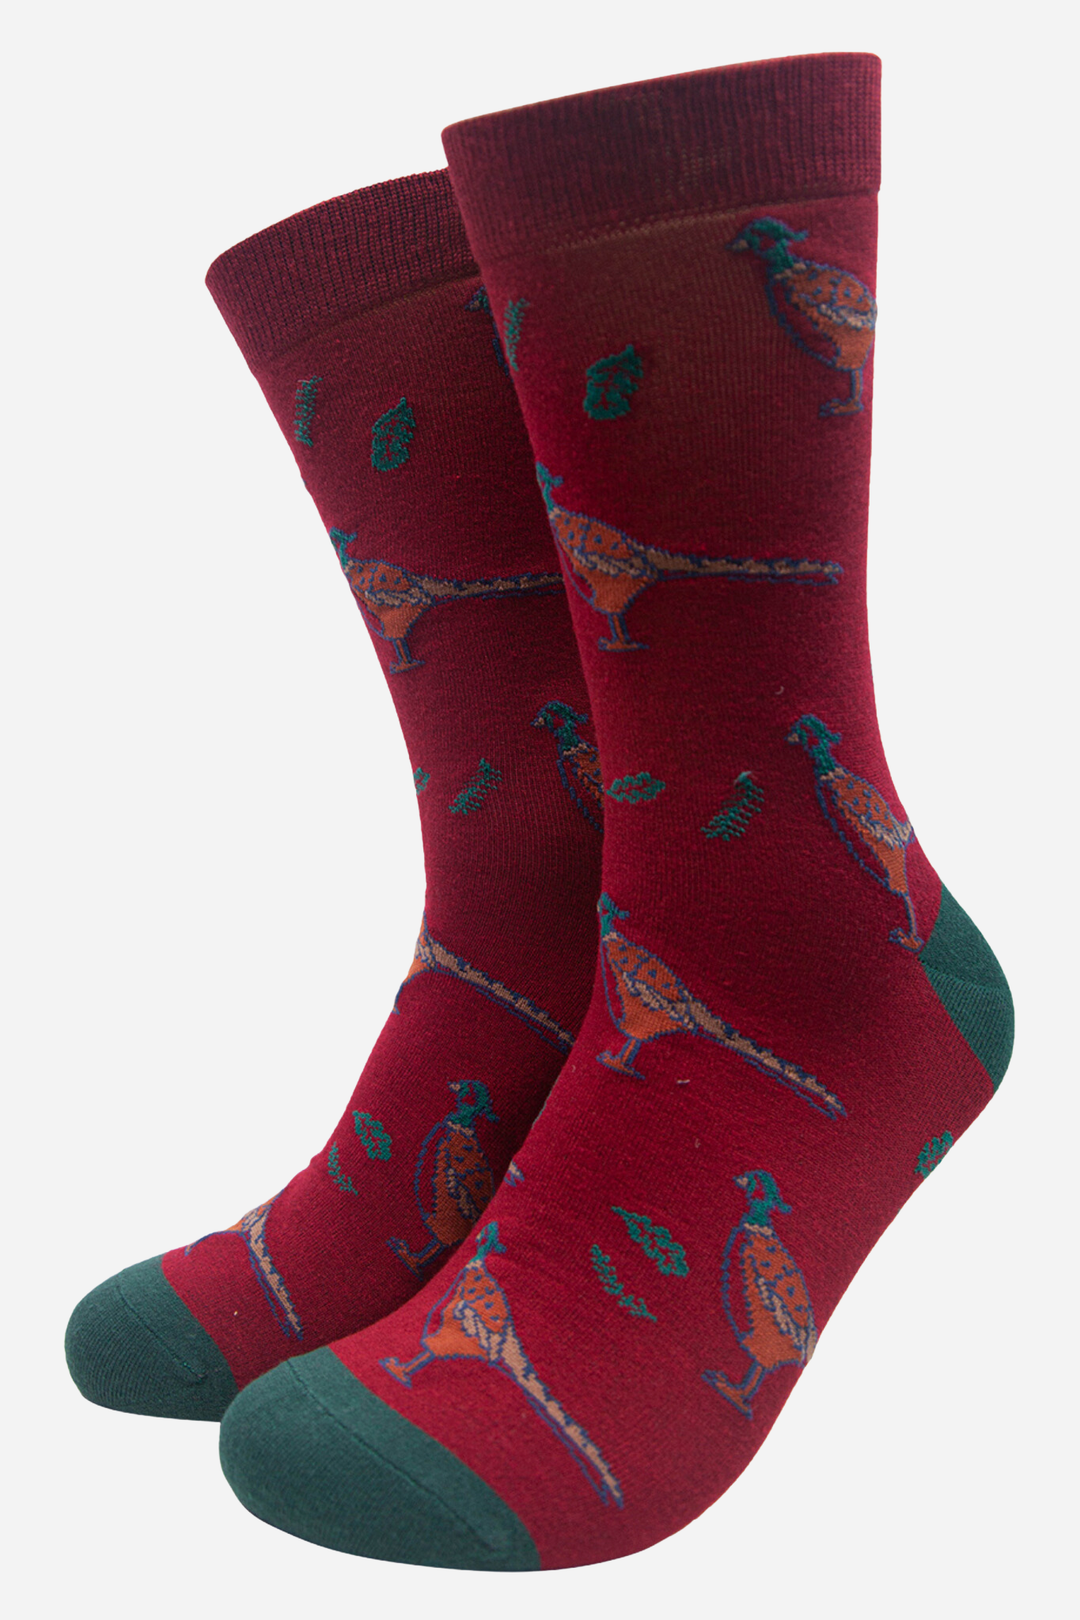 Sock Talk - Red Men's Pheasant Print Bamboo Socks